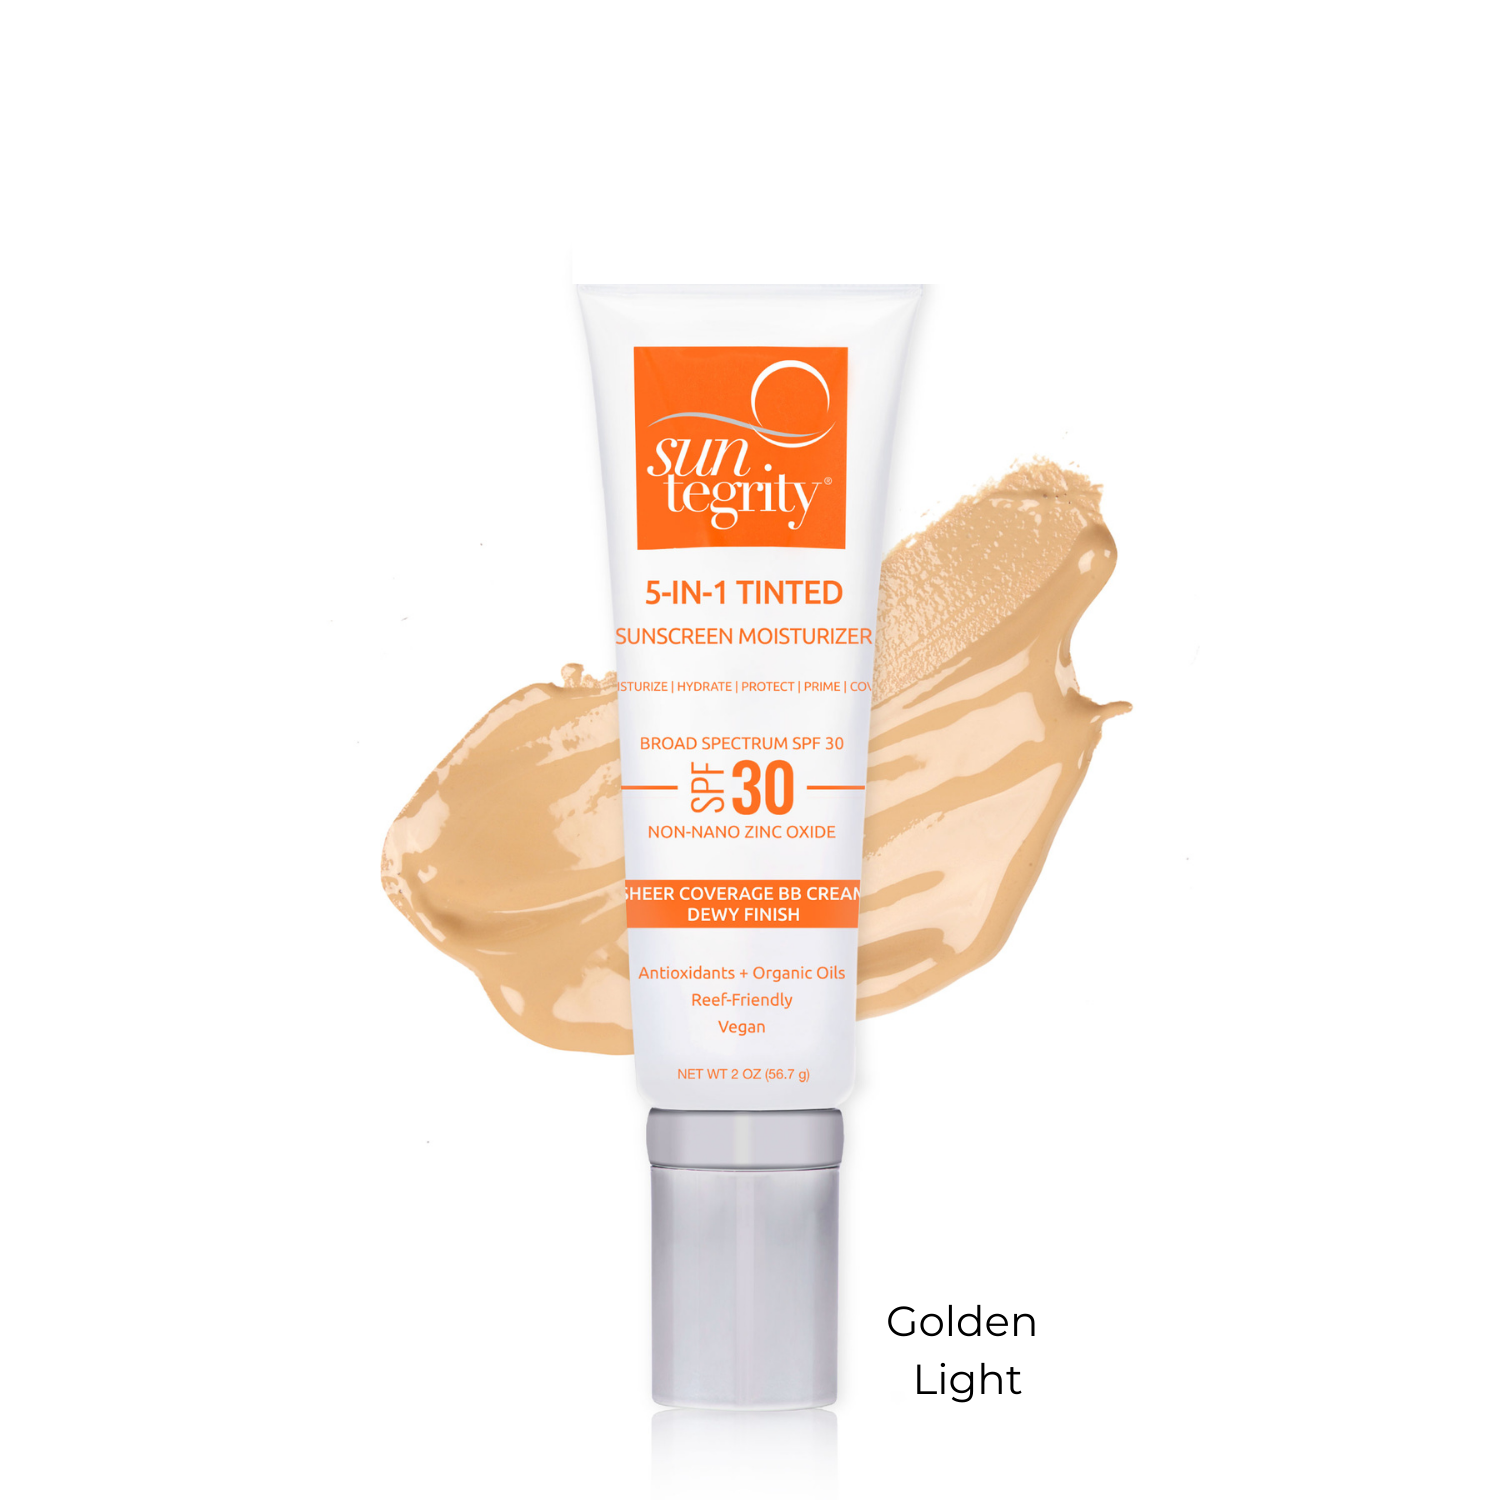 Suntegrity® 5-in-1 Tinted Sunscreen Moisturizer, Golden Light SPF 30